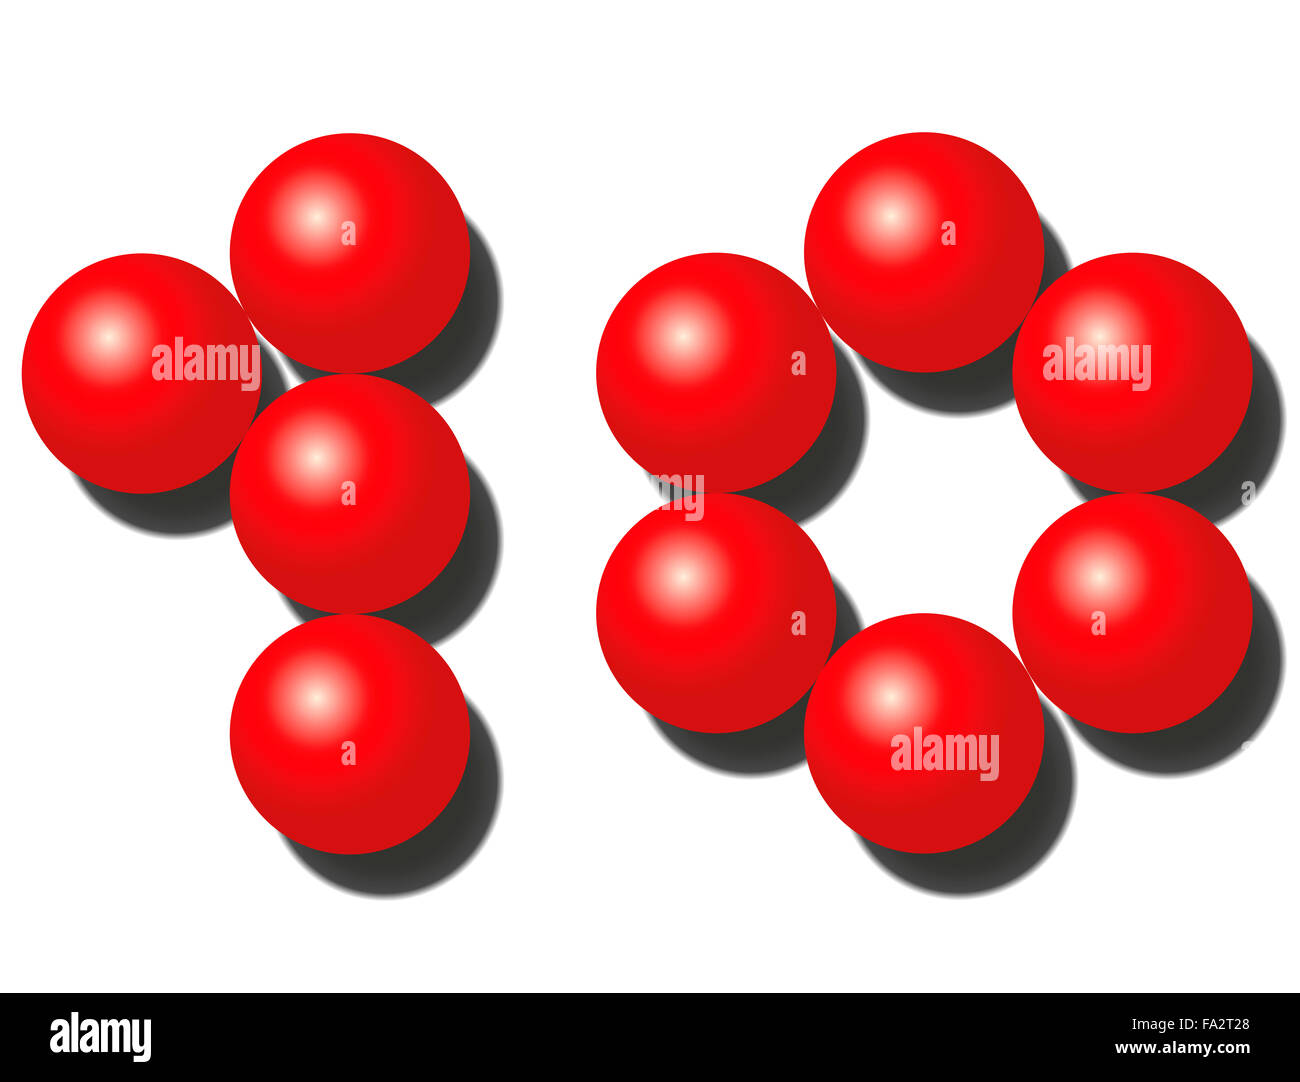 Ten red balls that look like number TEN. Stock Photo